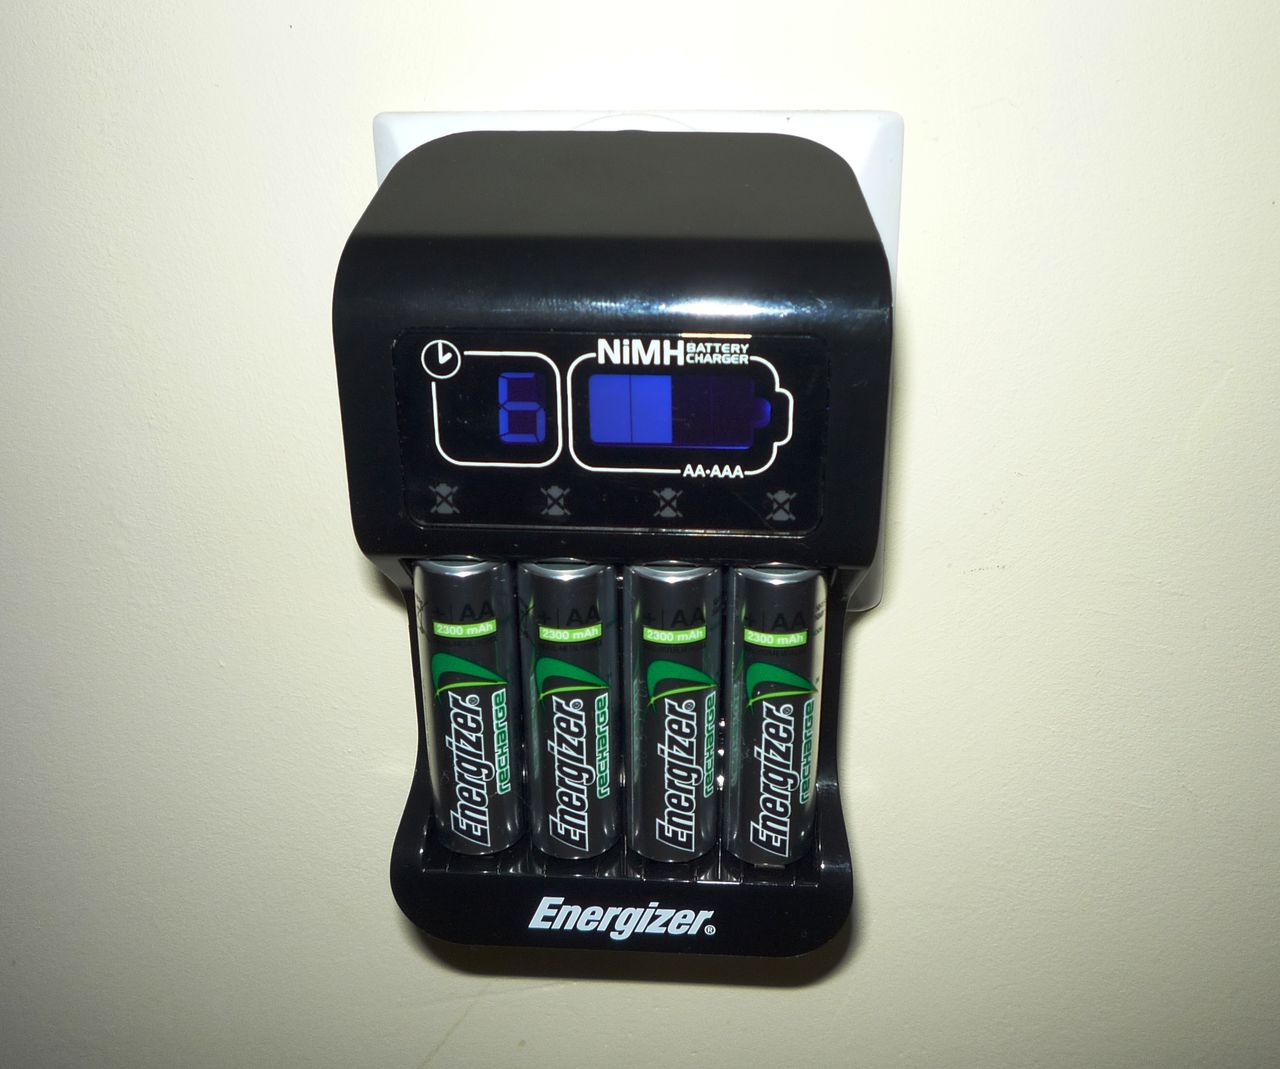 Energizer Intelligent informuje o pozostałym czasie i stopniu naładowania akumulatorów